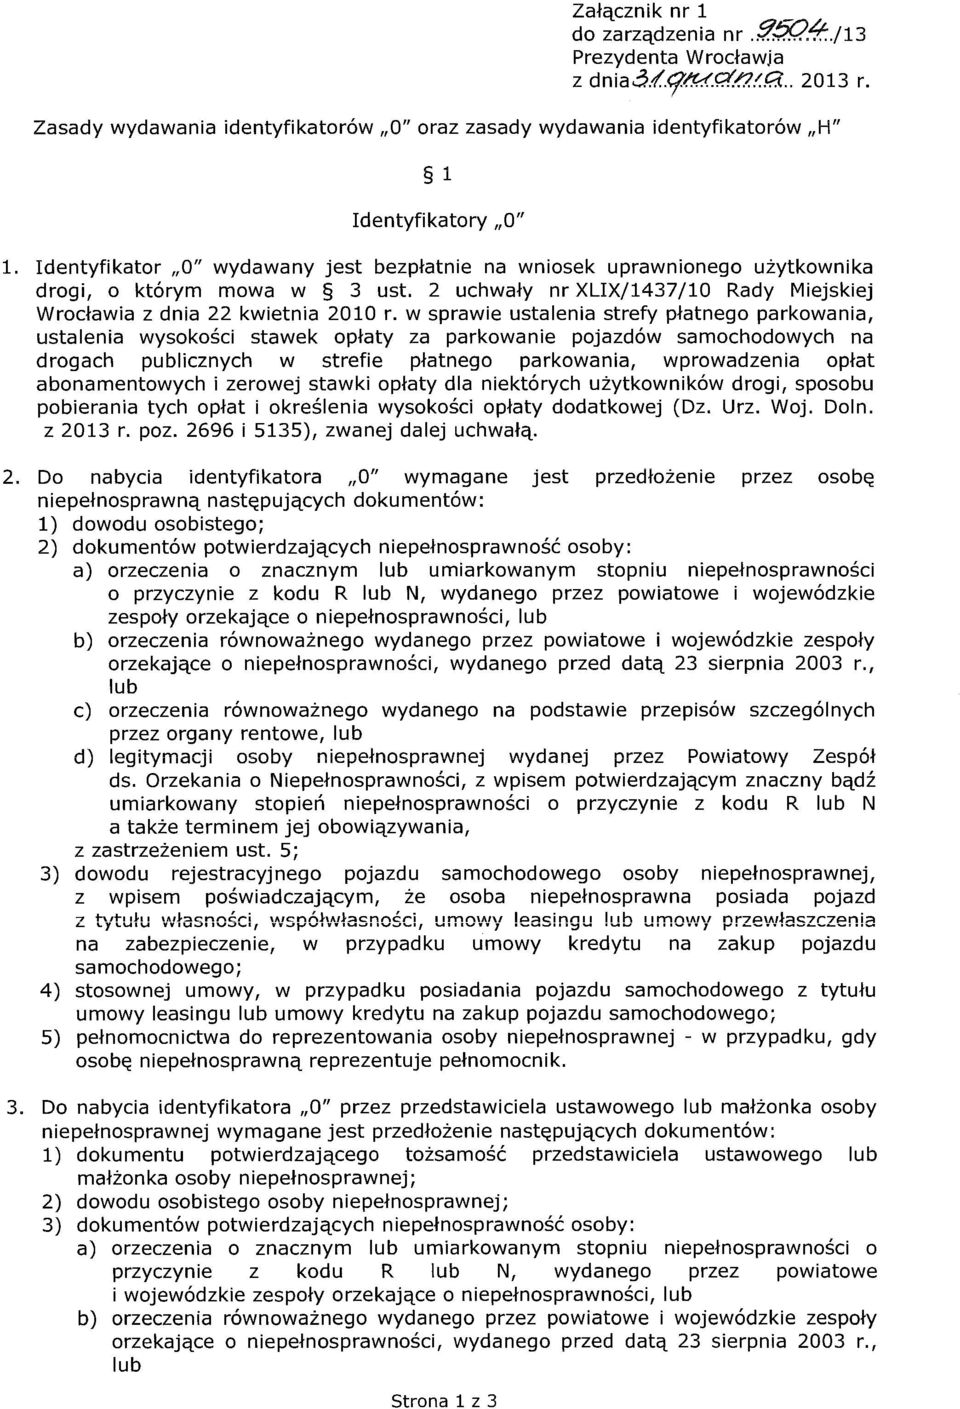 Identyfikator "0" wydawany jest bezpłatnie na wniosek uprawnionego użytkownika drogi, o którym mowa w 3 ust. 2 uchwały nr XLIX/1437/10 Rady Miejskiej Wrocławia z dnia 22 kwietnia 2010 r.